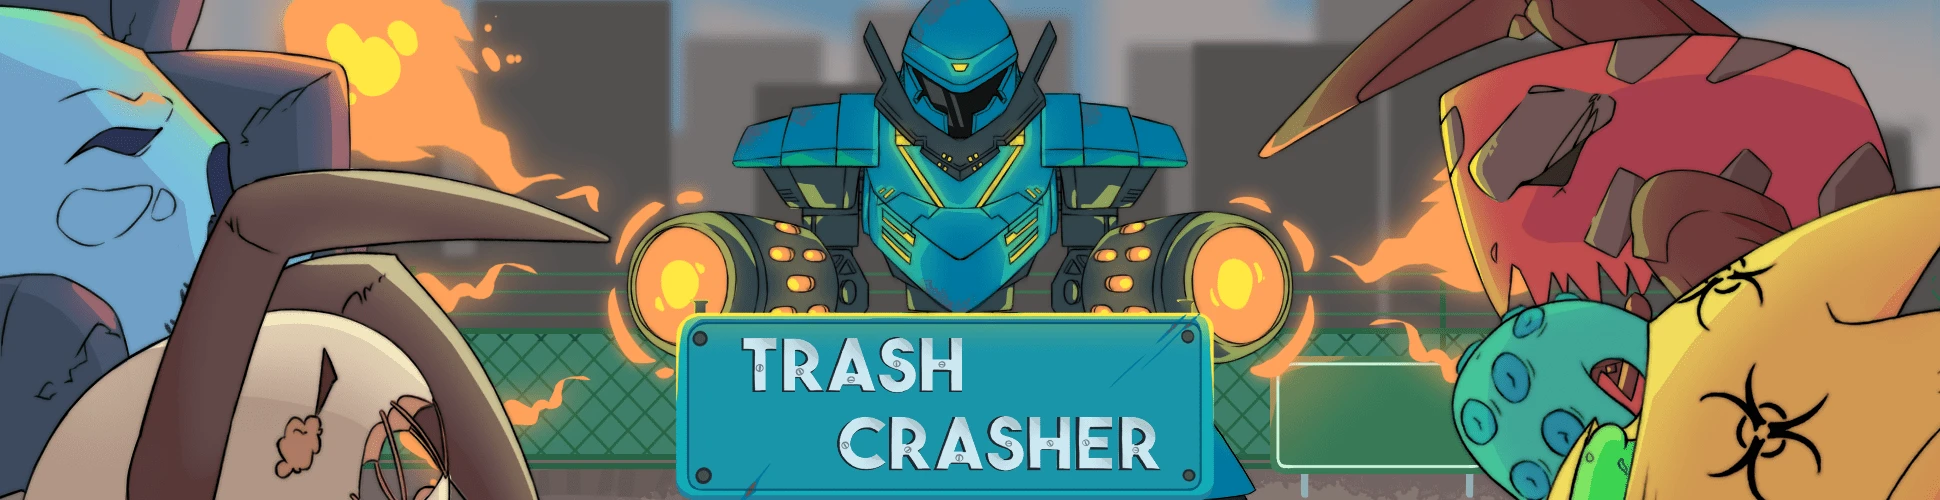 Trash Crasher Banner